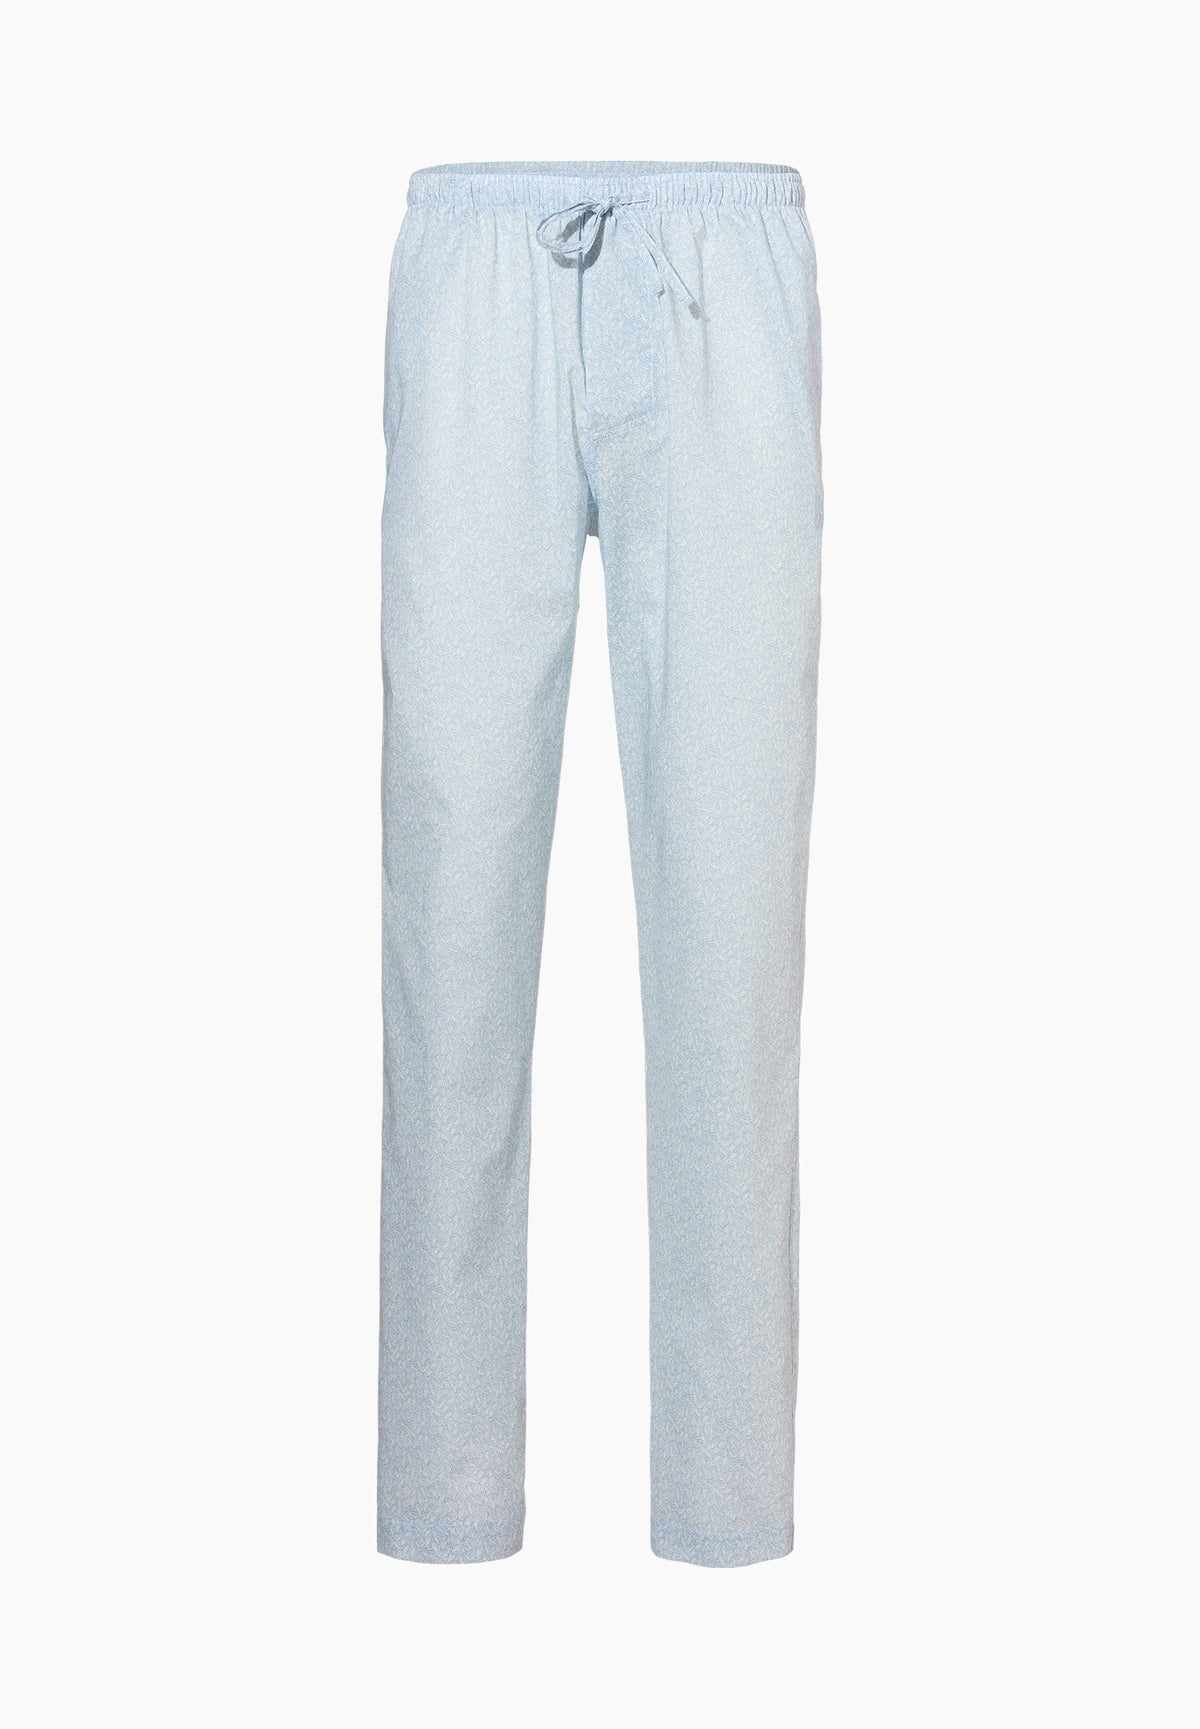 Cotton Voile Print | Pantalon - light blue